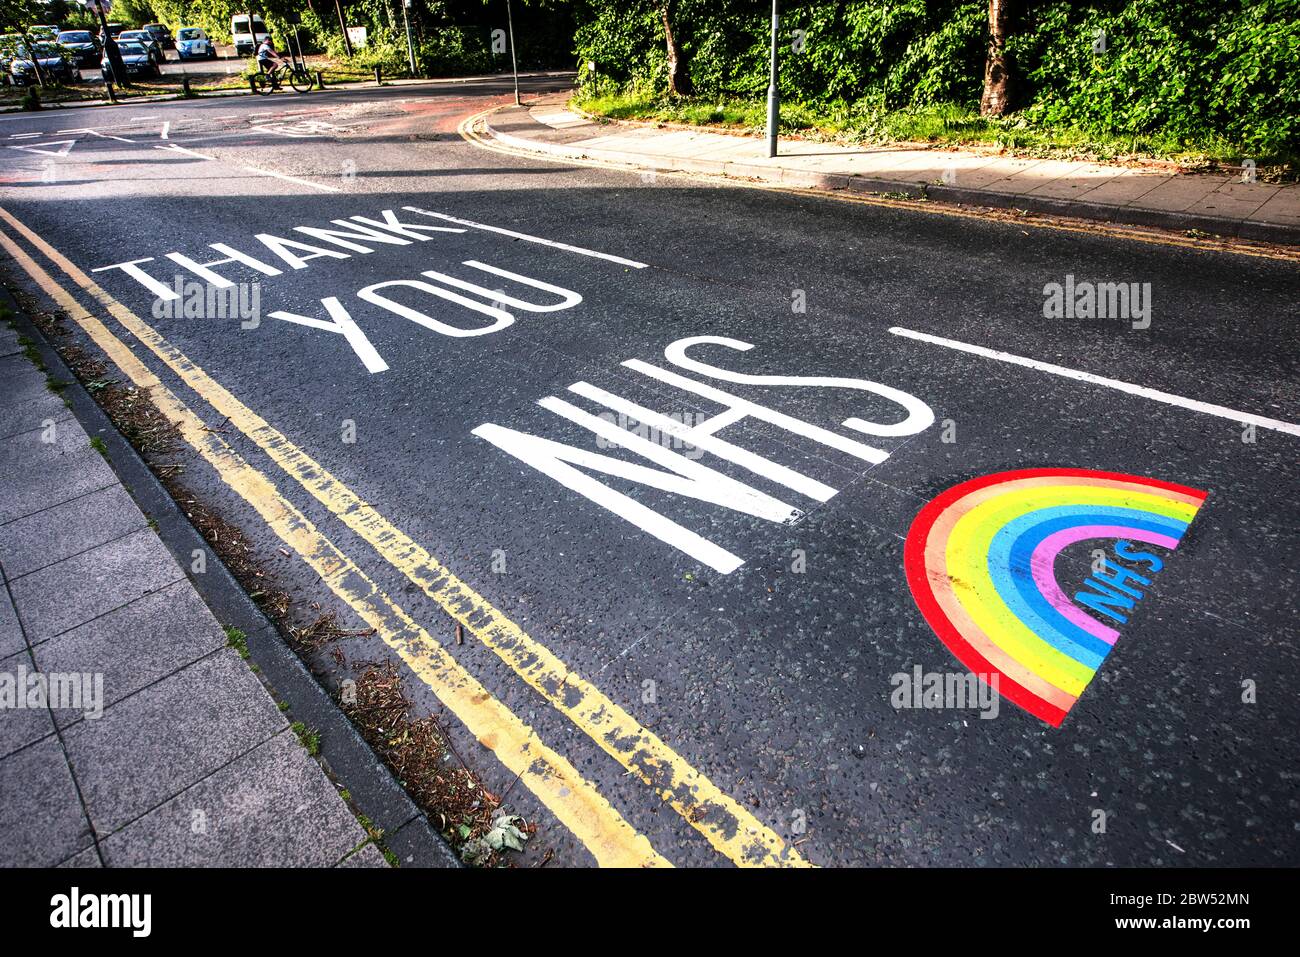 Neu bemalte Straßenmarkierungen Vielen Dank NHS und ein Regenbogen wurden vor einem medizinischen Zentrum in Manchester gemalt, um allen Mitarbeitern des NHS zu danken. Stockfoto